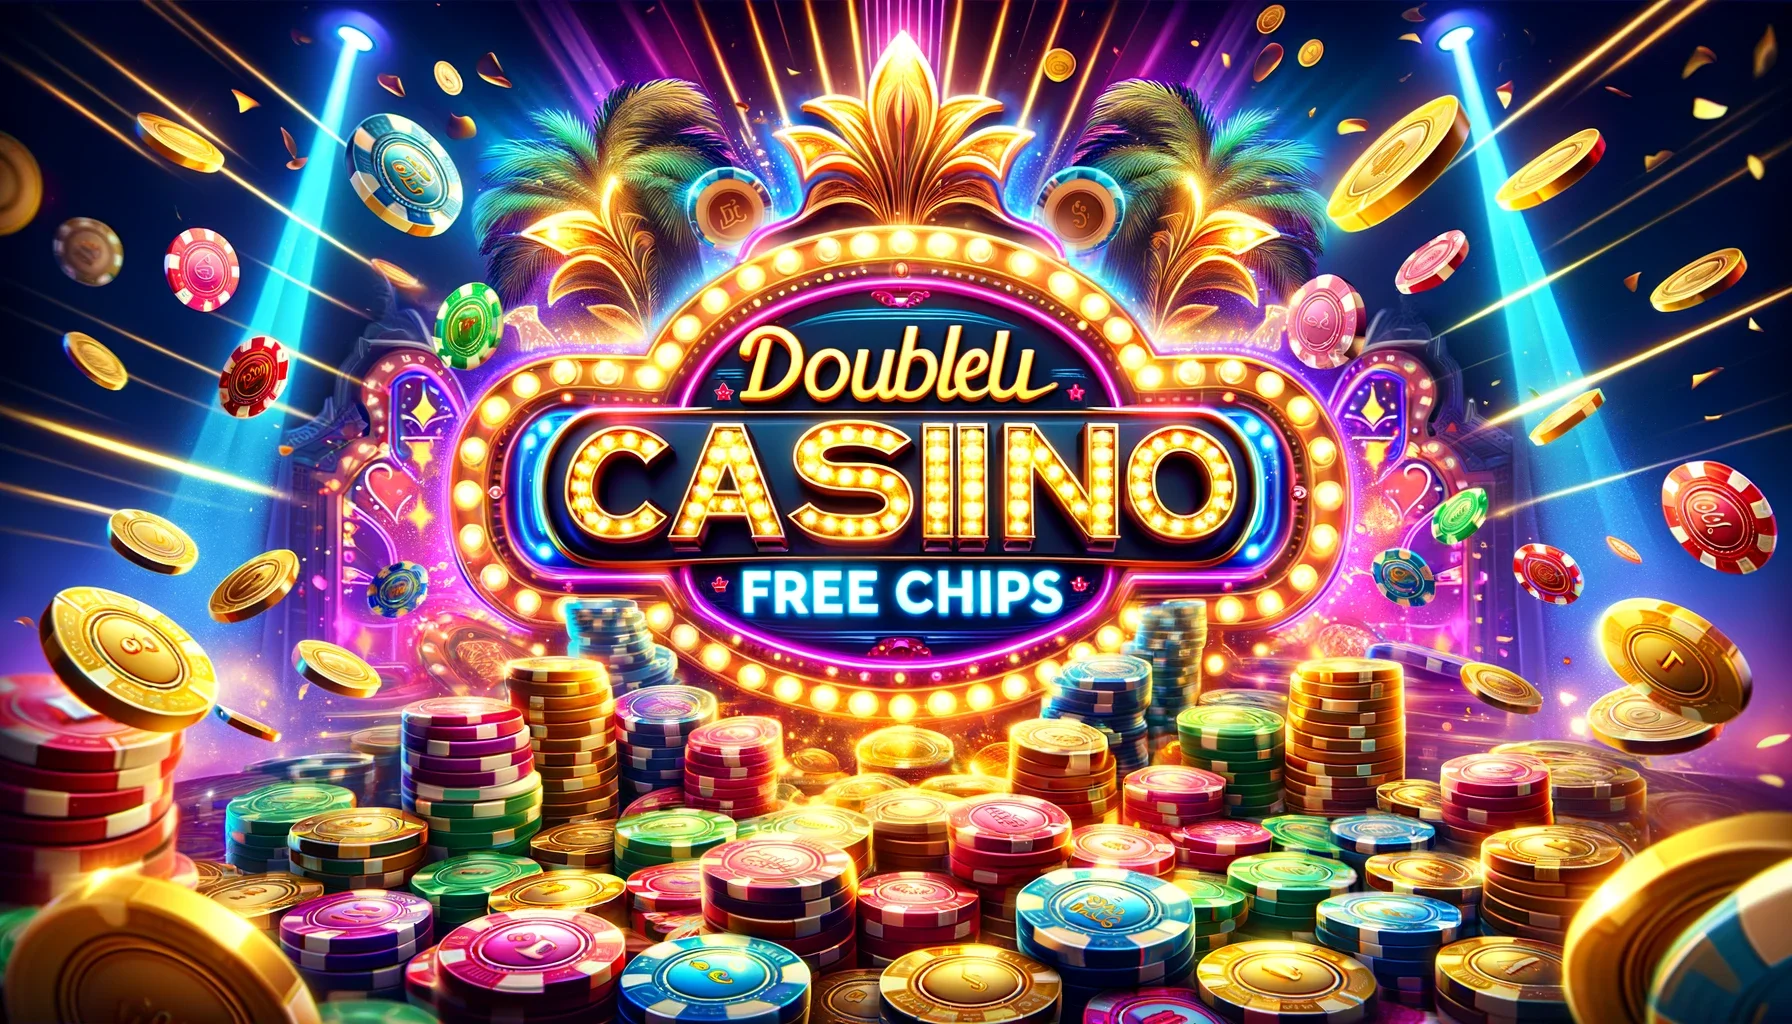 Doubleu Casino Free Chips